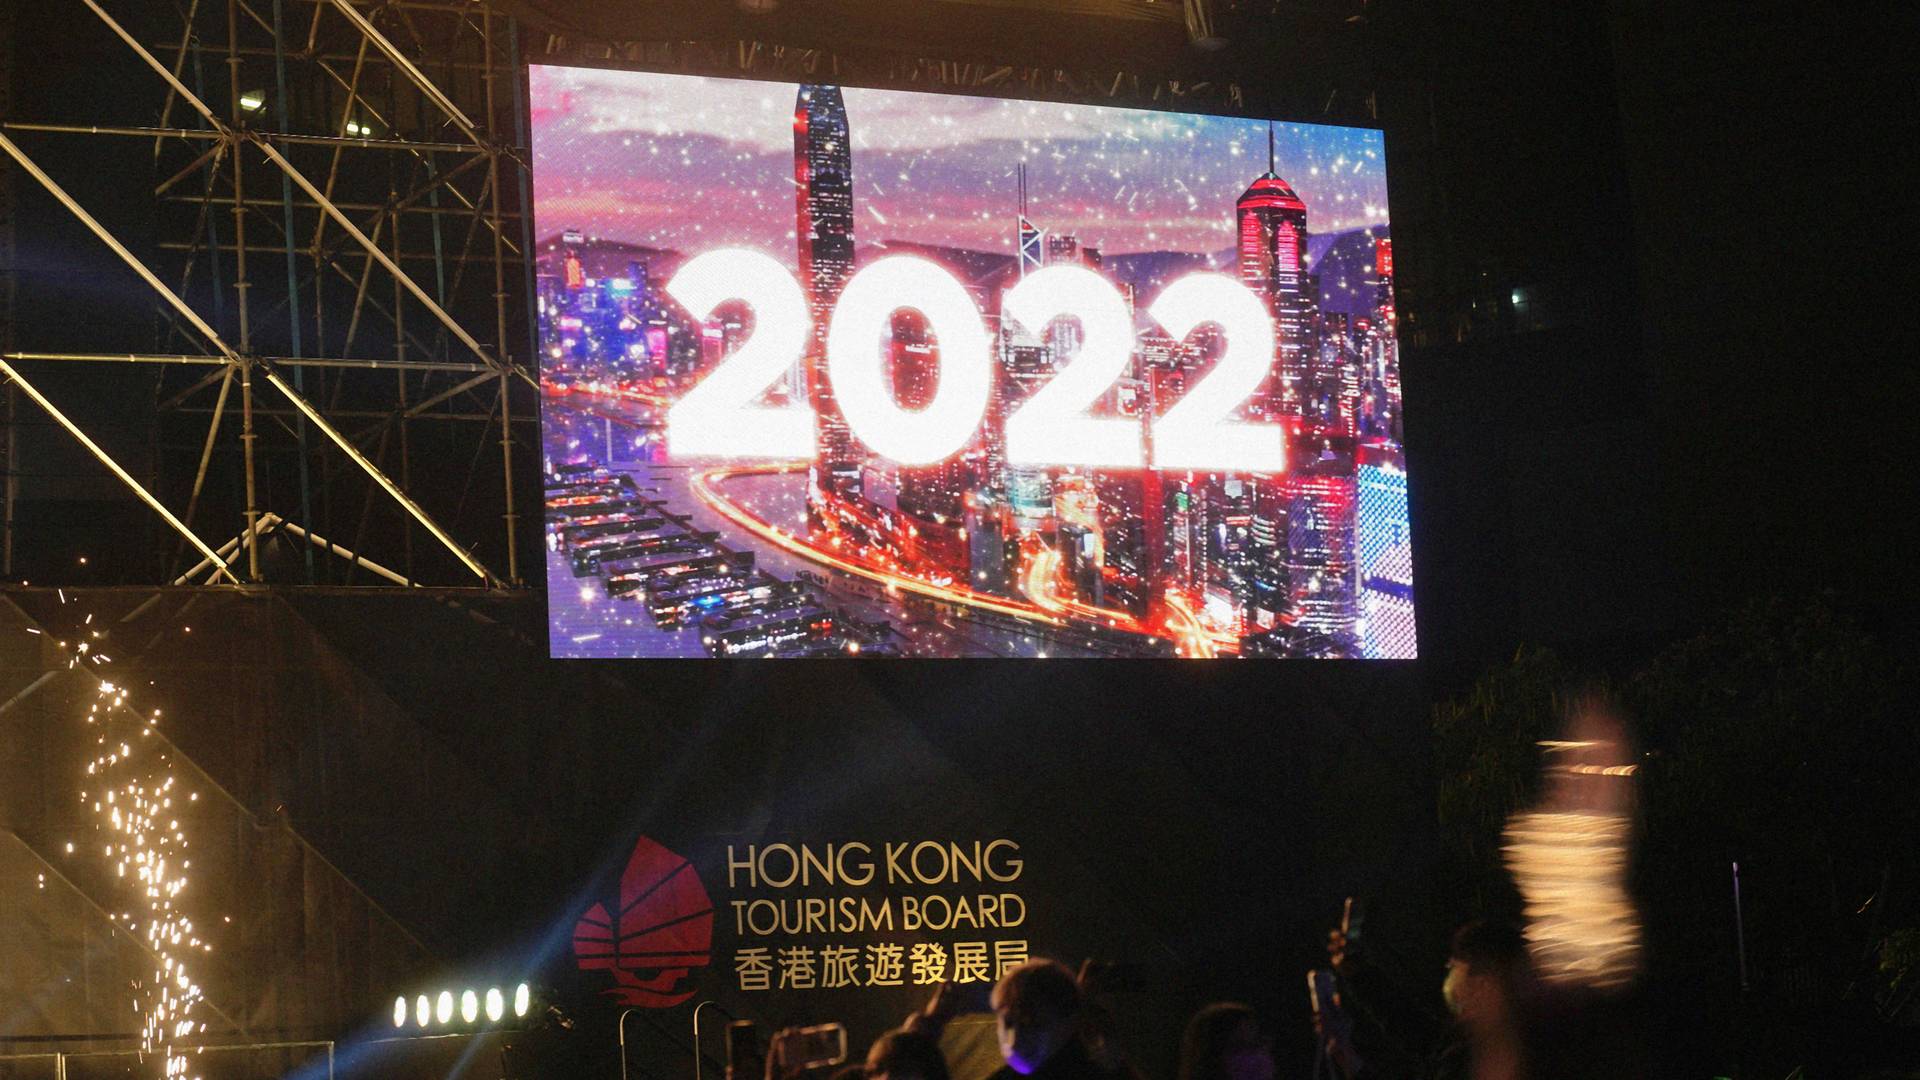 Mi lesz 2022-ben? Ezek az idei év legfontosabb eseményei